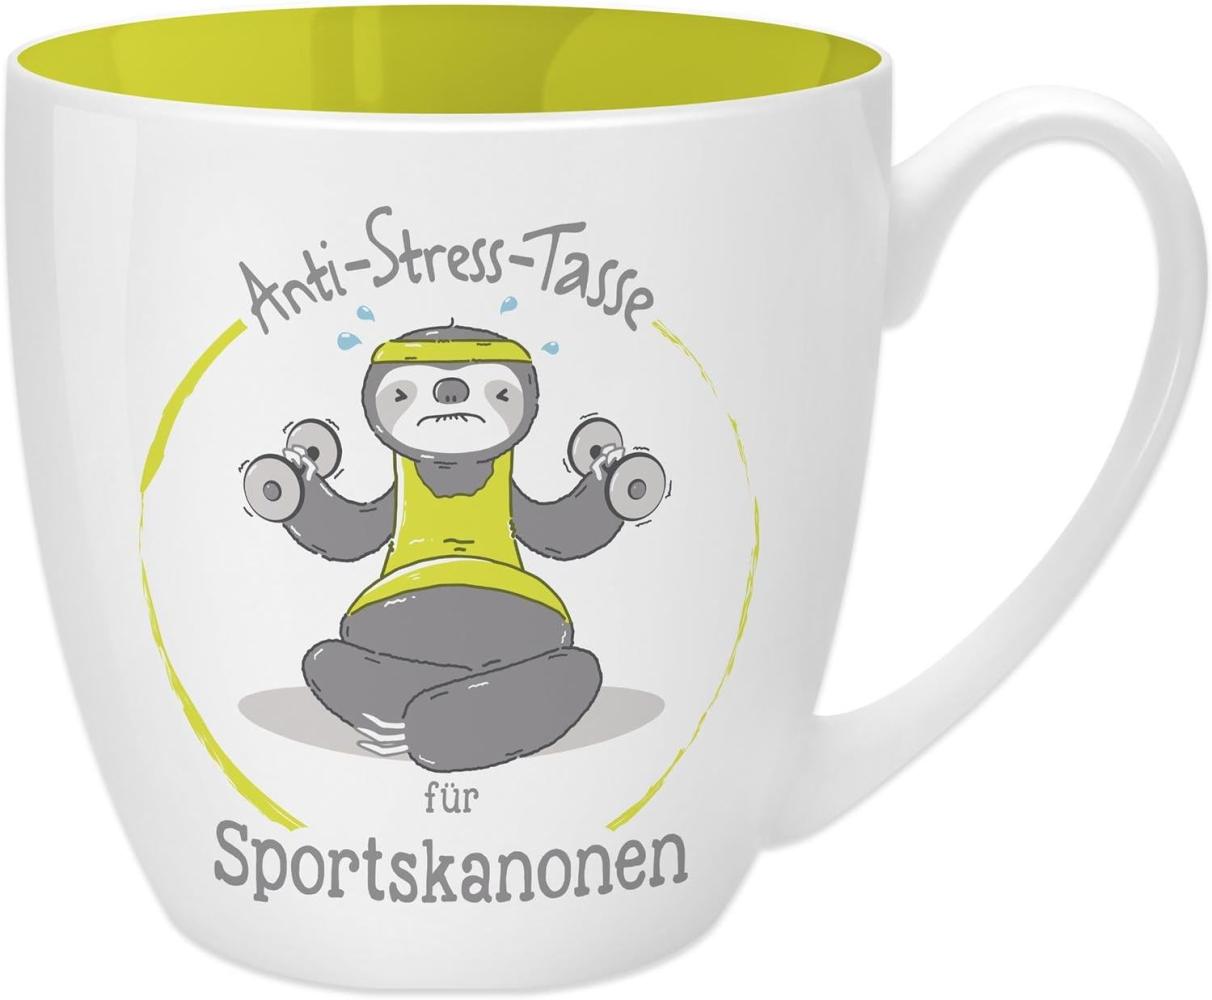 GRUSS & CO Anti-Stress-Tasse Motiv "Sportskanonen" | Tasse mit Spruch, 45 cl, New Bone China | Geschenk lustig | 45522 Bild 1